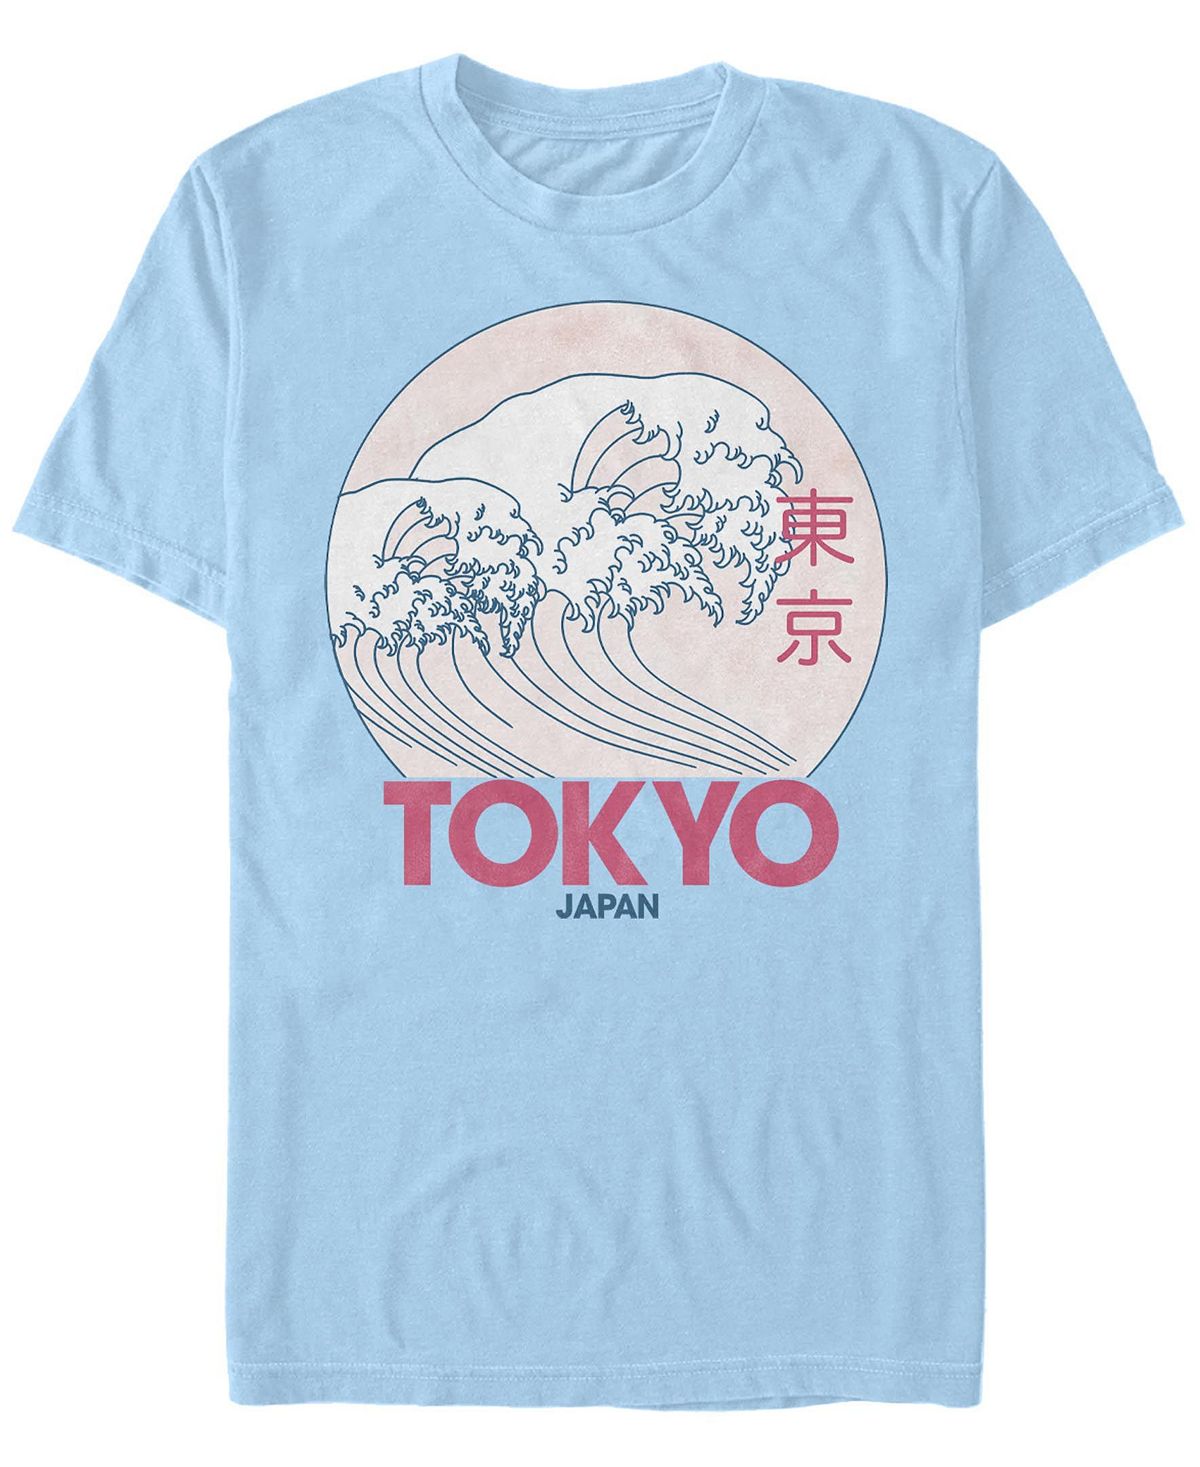 Мужская футболка с круглым вырезом с короткими рукавами в винтажном стиле tokyo Fifth Sun, светло-синий мужская футболка с круглым вырезом и короткими рукавами в винтажном стиле с логотипом университета монстров fifth sun белый